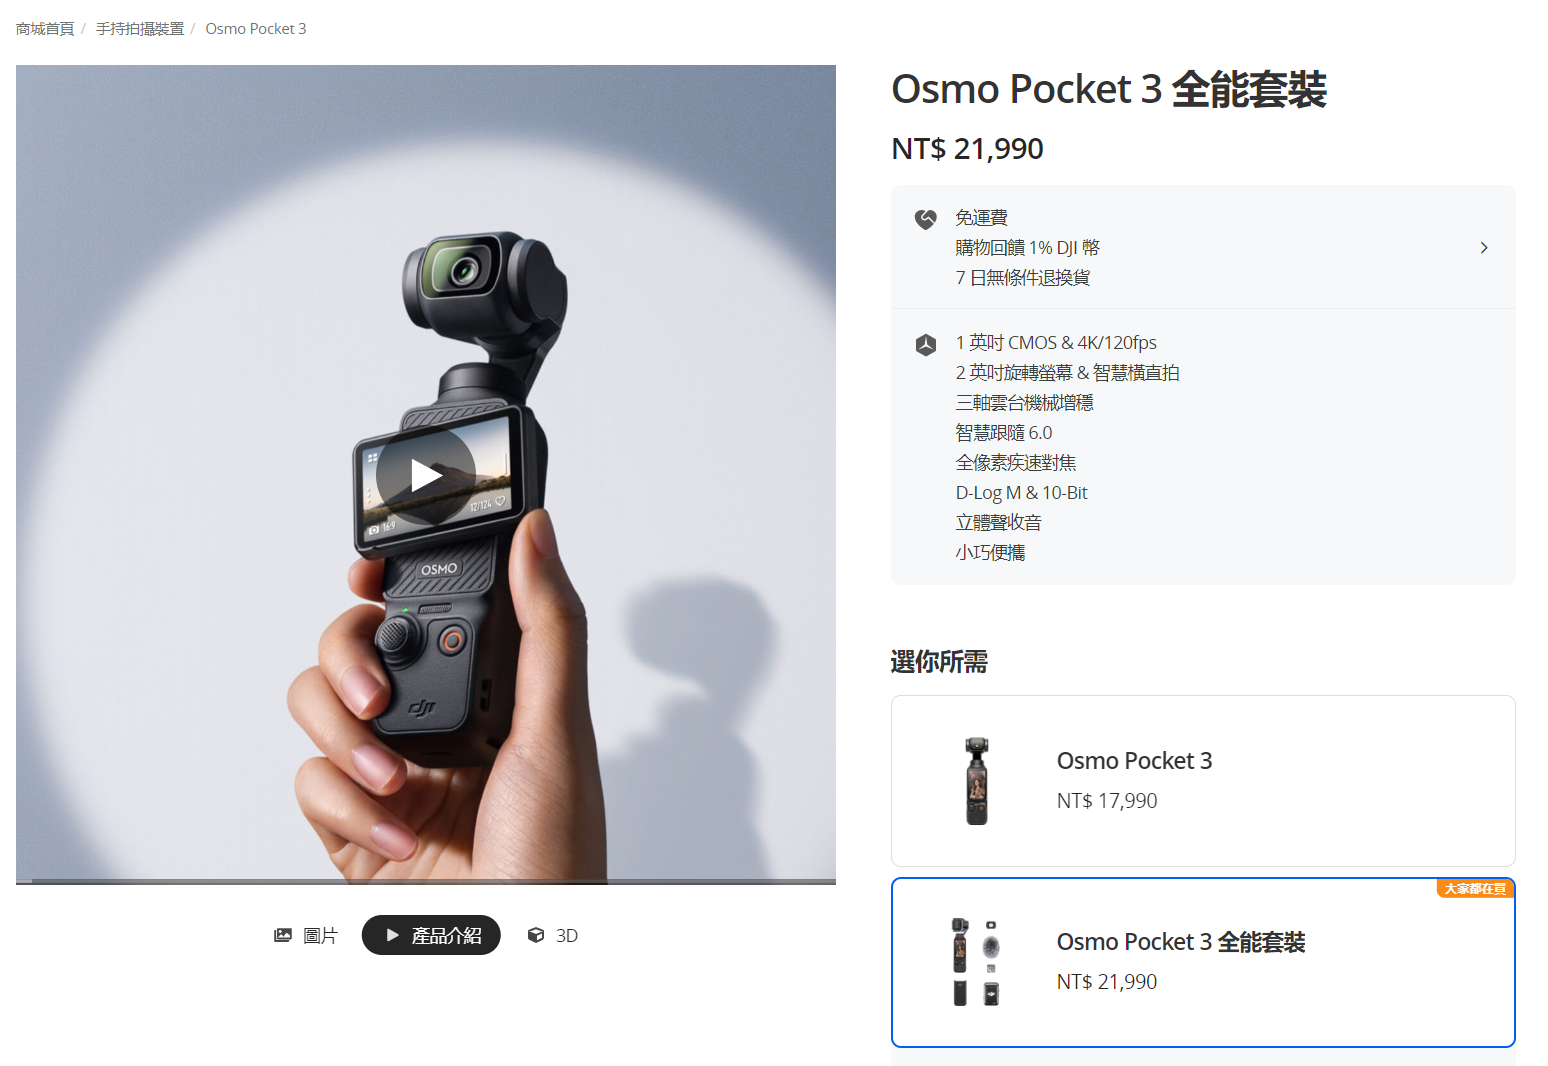 大疆DJI Osmo Pocket 3幾乎無敵，1英吋感光元件+三軸雲台居然可以塞180克重的小機器?!  看完眾多評測，這個致命缺點你能接受嗎?